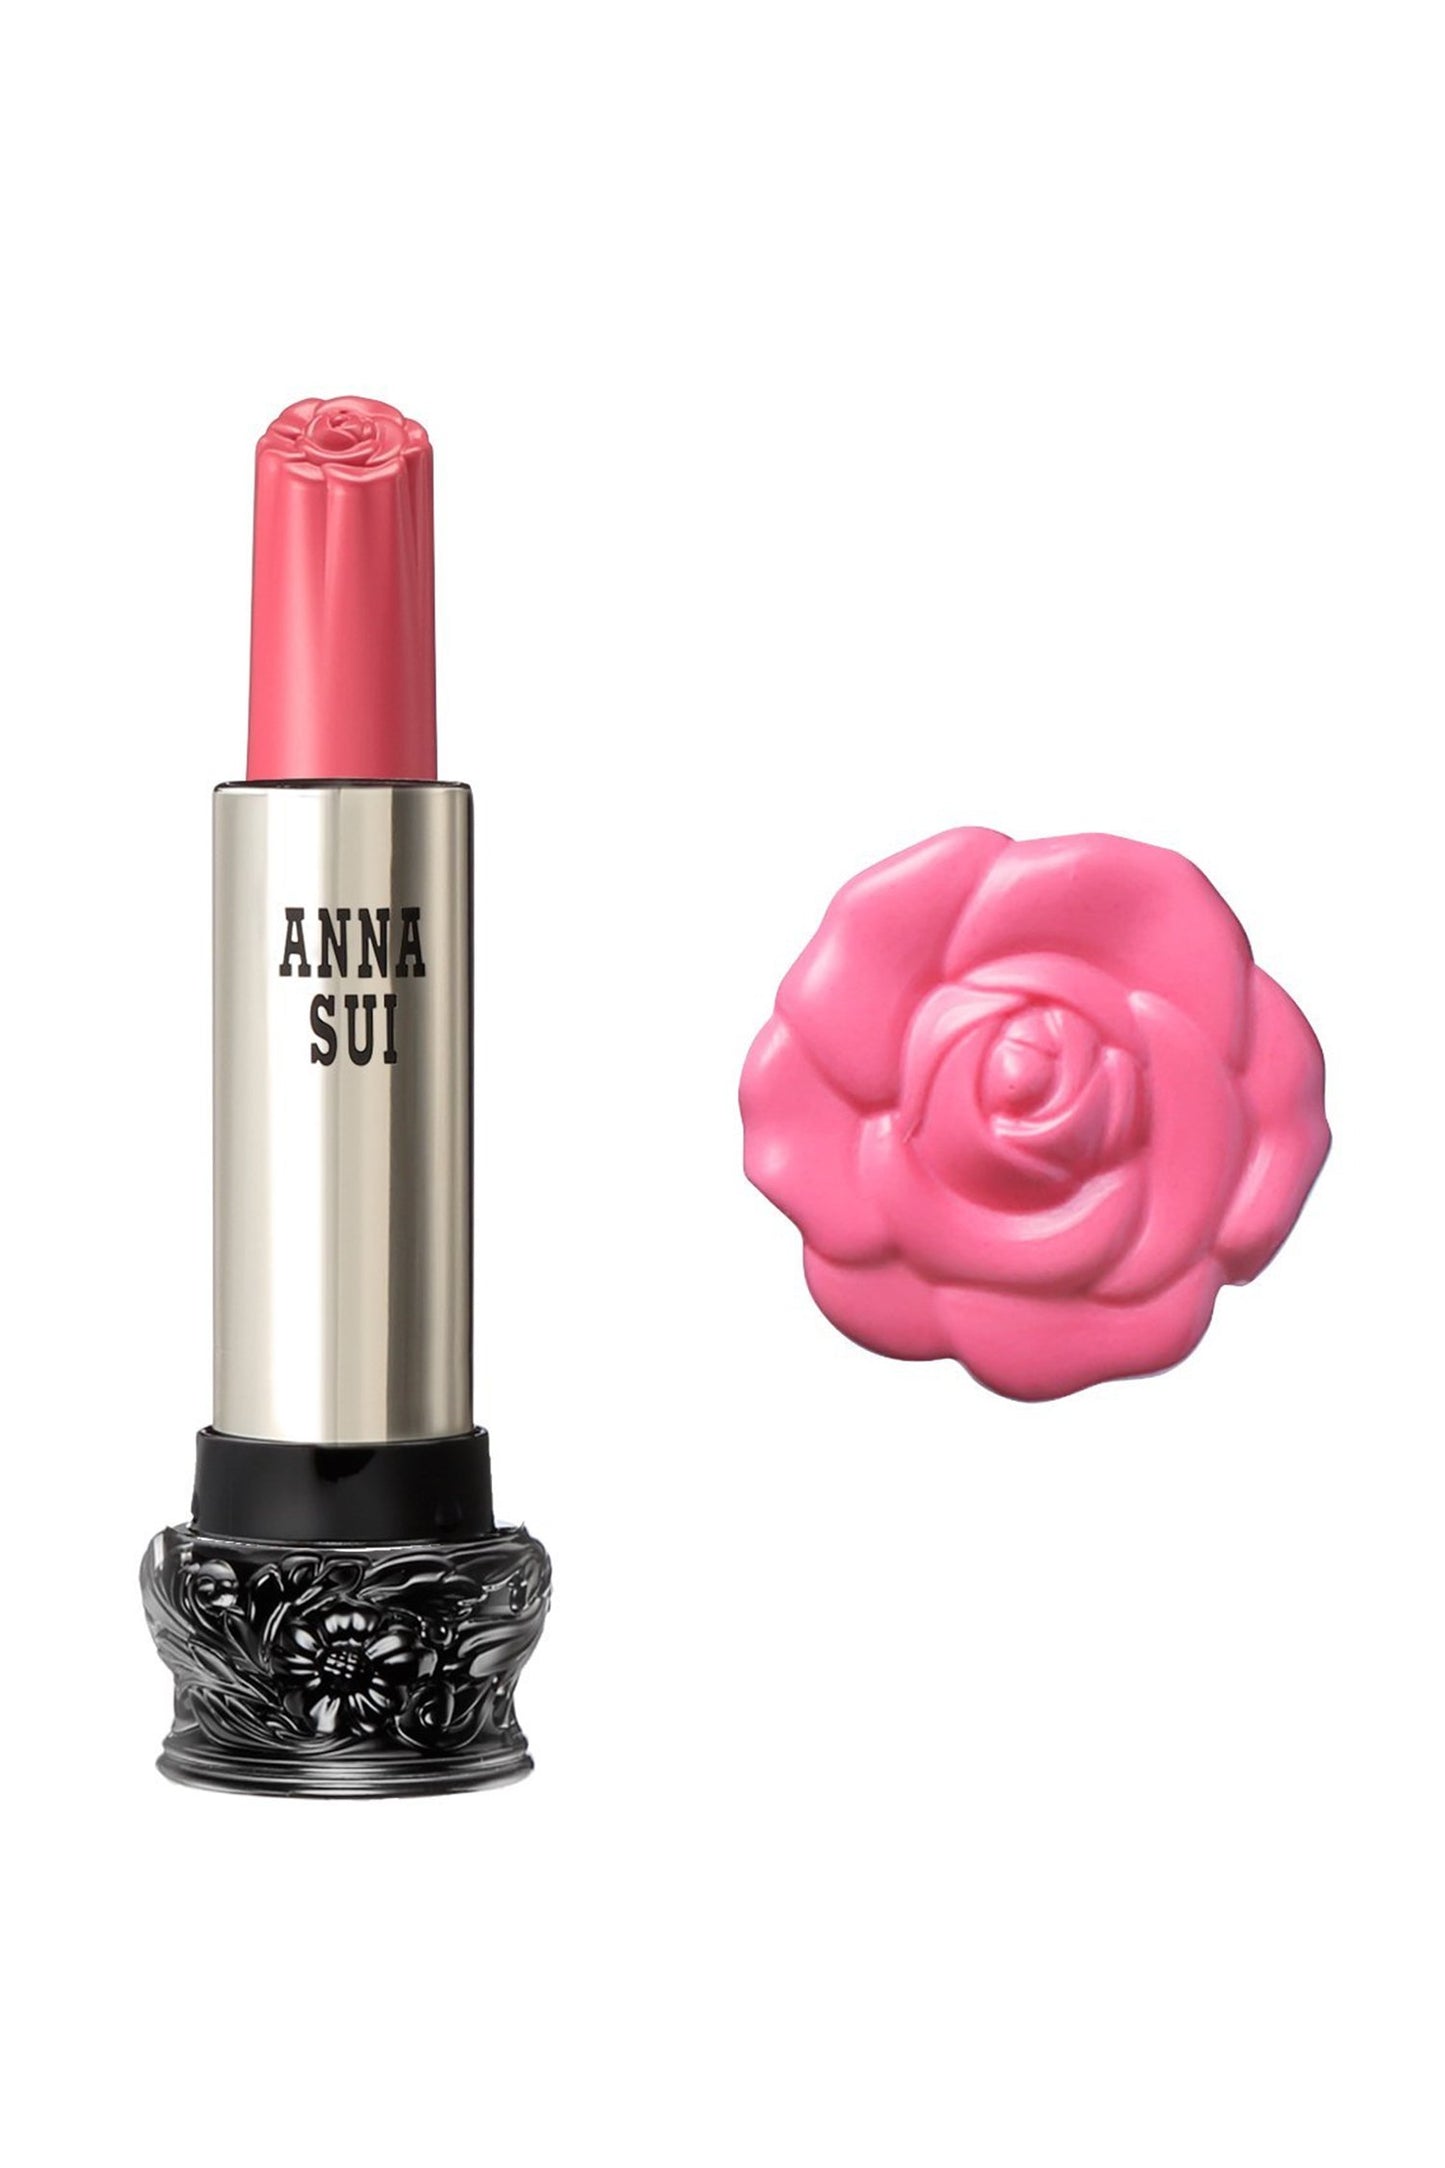 300 - 淡粉色牡丹唇膏 F：仙女花，在圓柱形容器中，大黑色底座，雕刻花卉設計，金屬身體